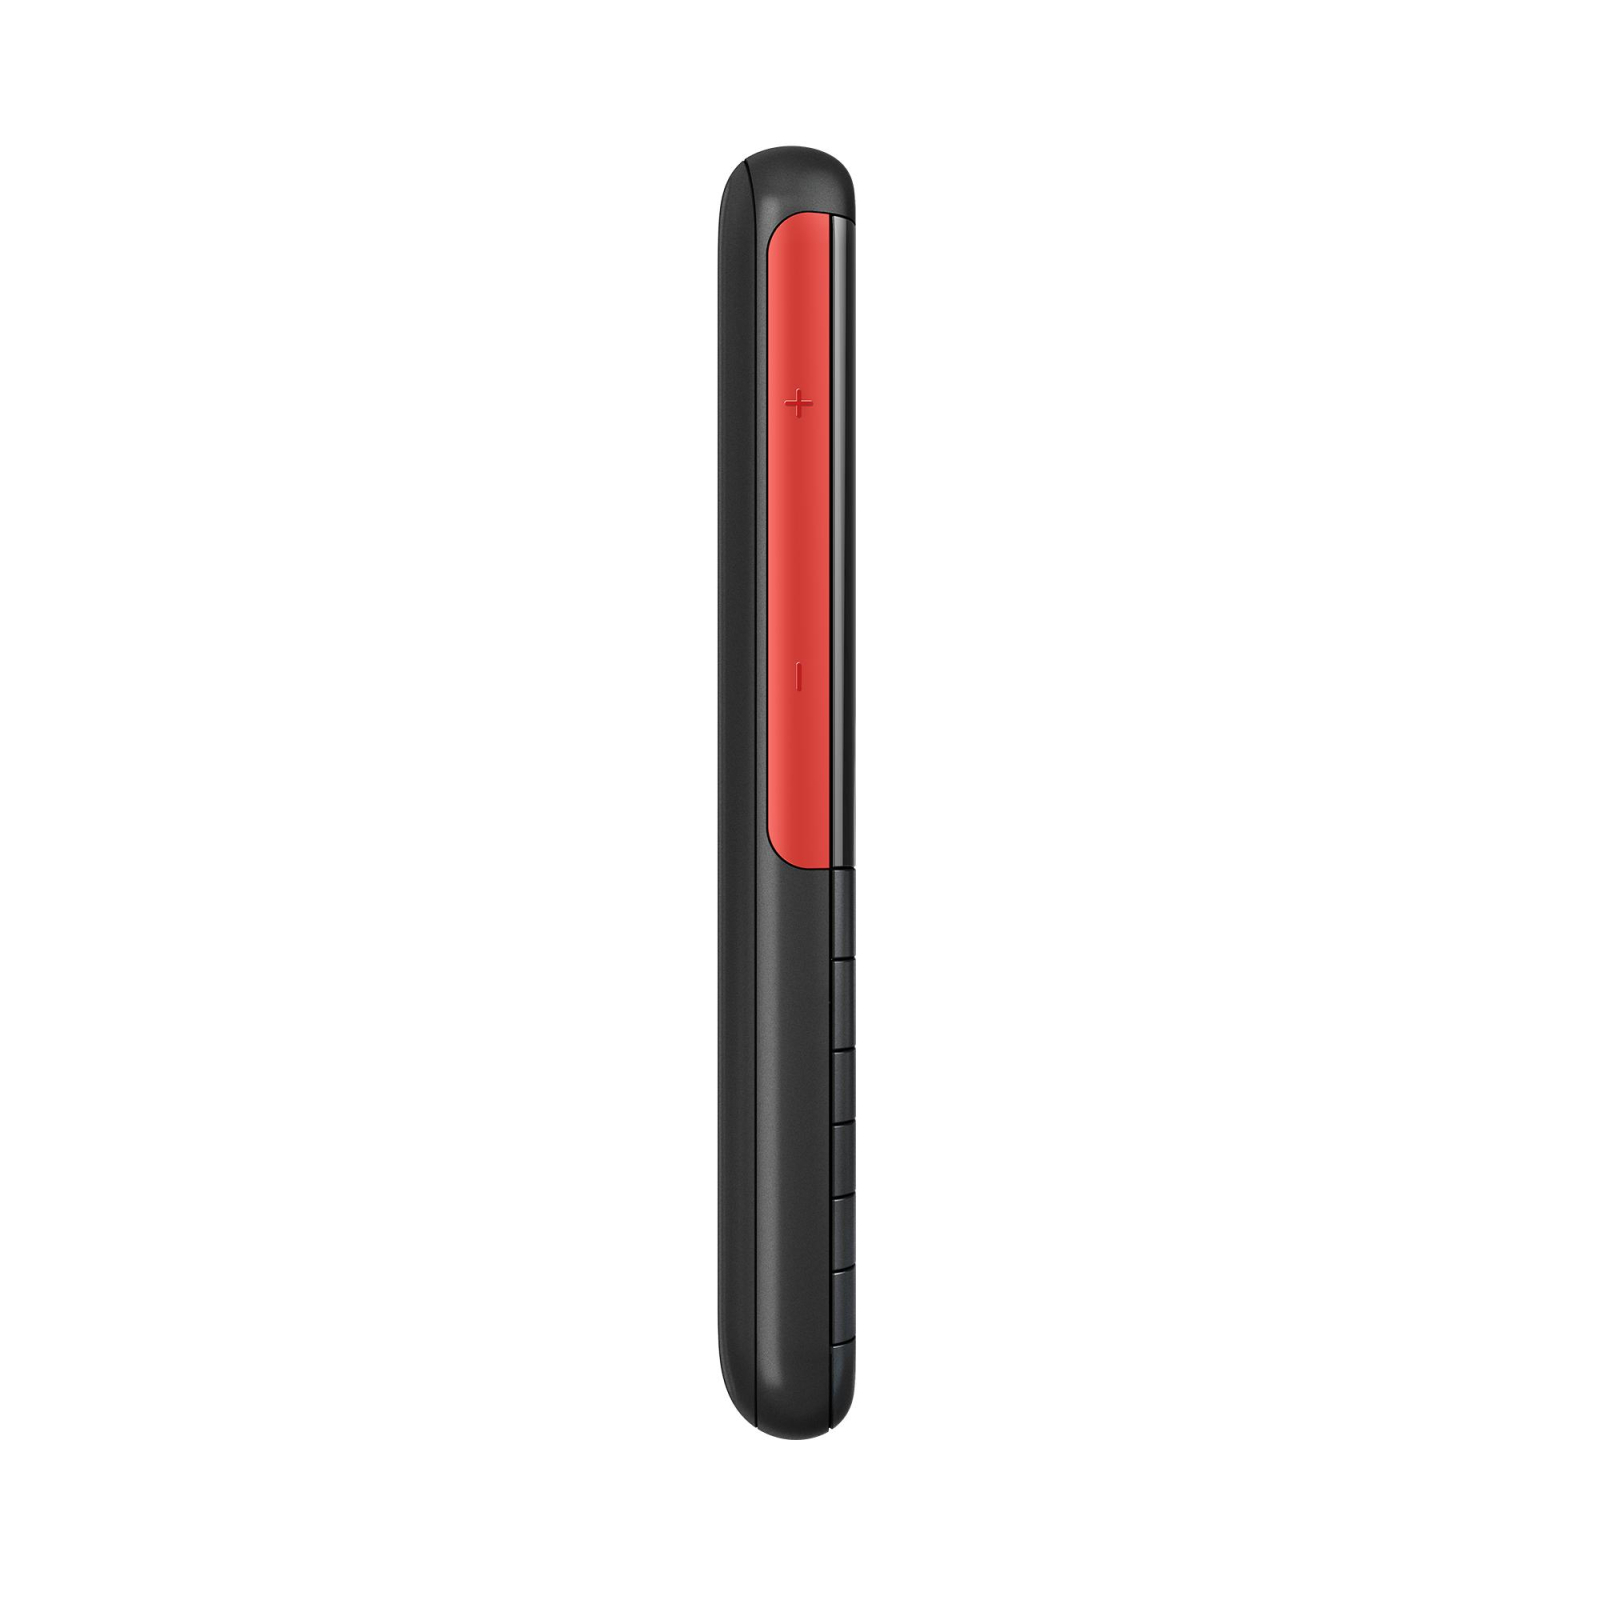 Мобильный телефон Nokia 5310 DS Black-Red изображение 5